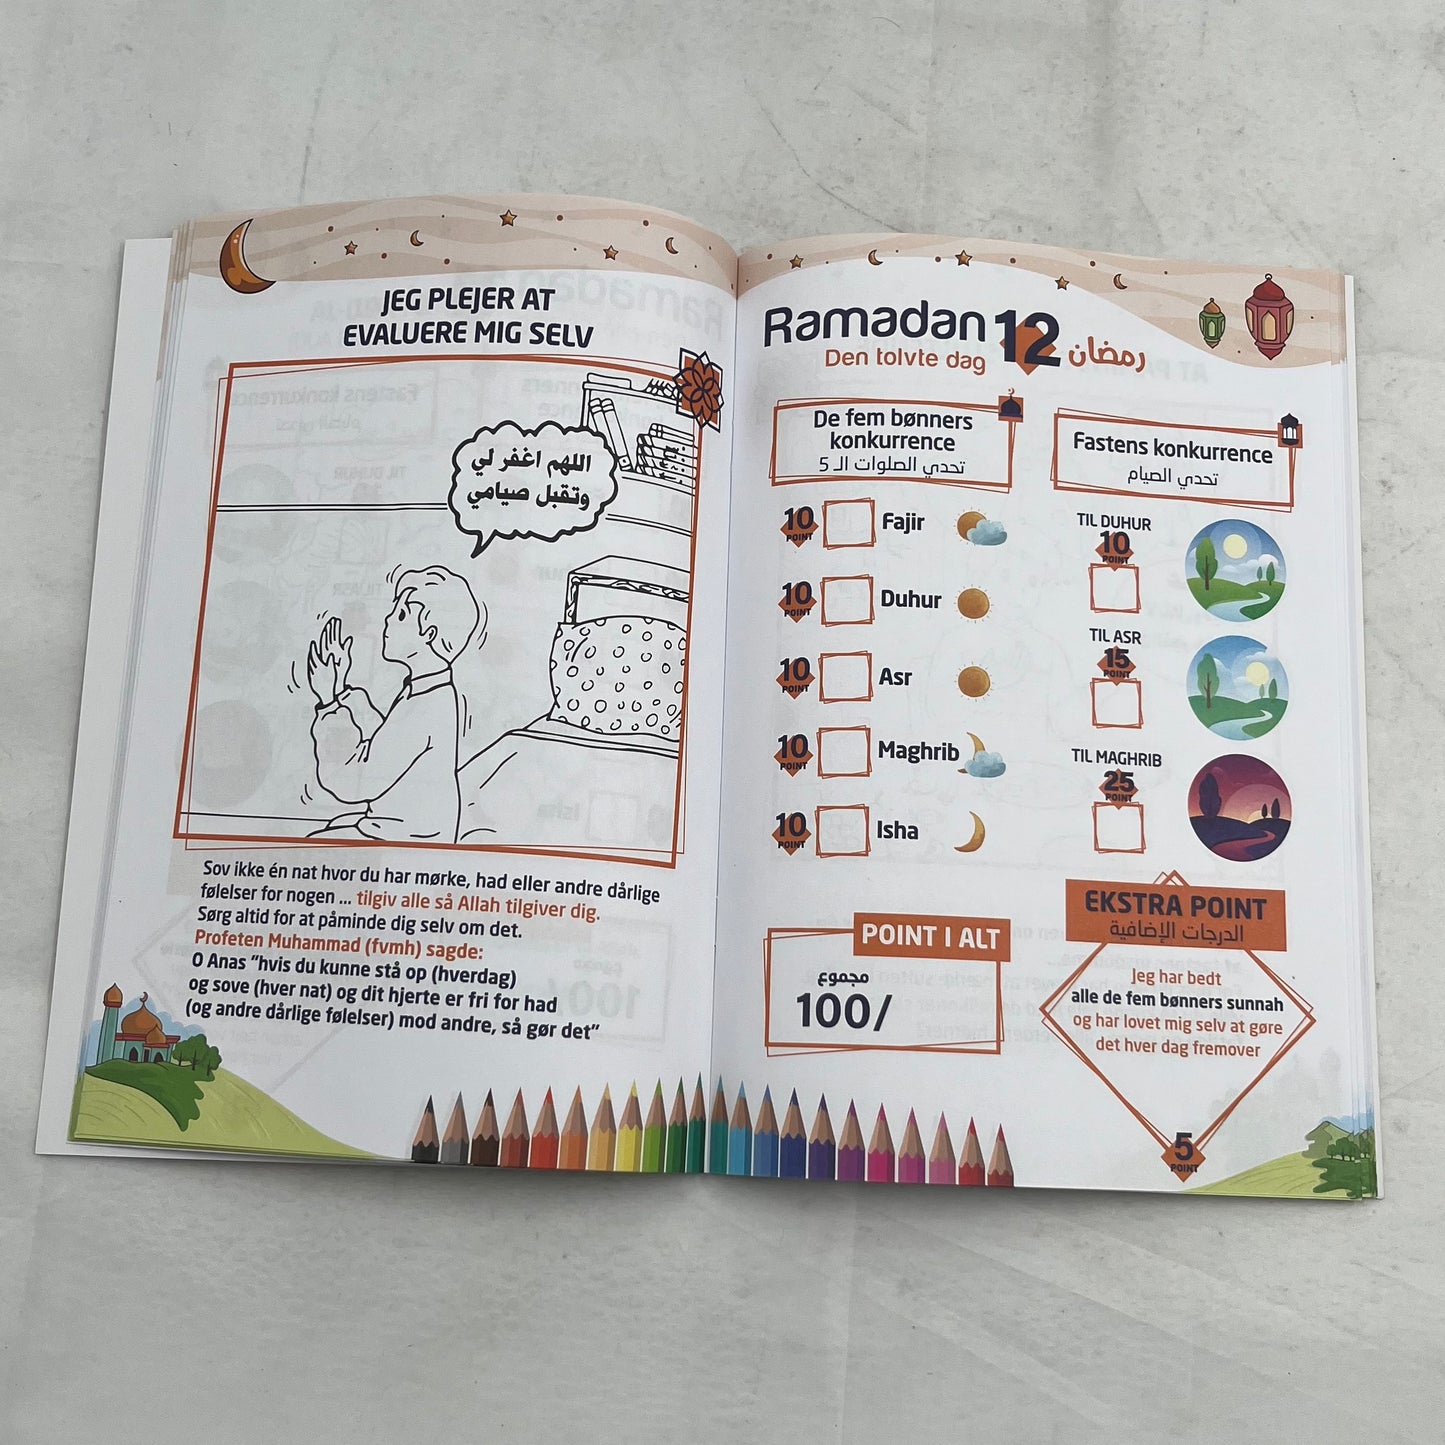 Ramadan Habibi Aktivitetsbog til børn - Løven Home